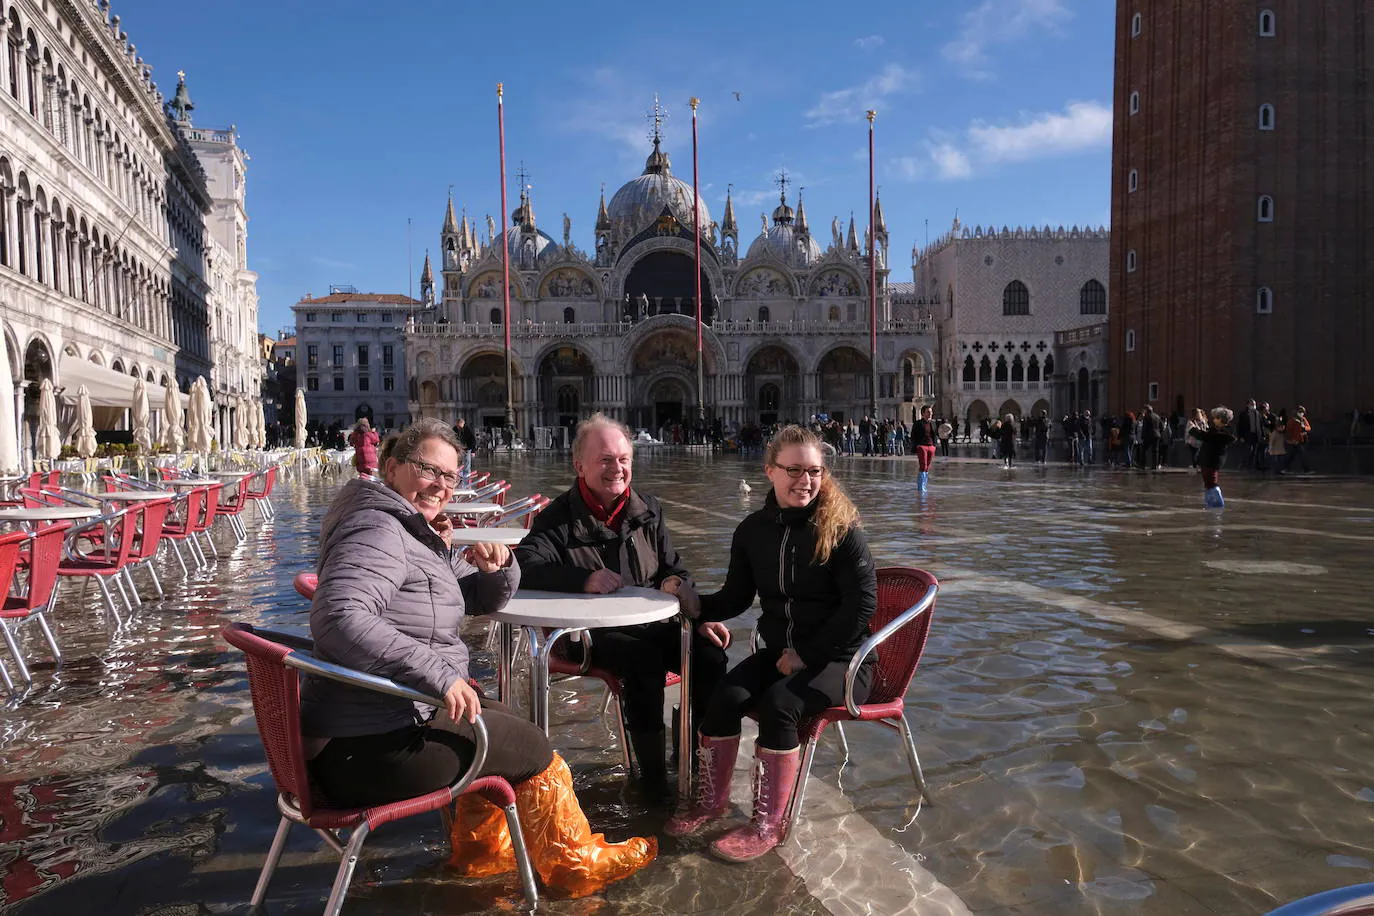 El acqua alta vuelve a Venecia